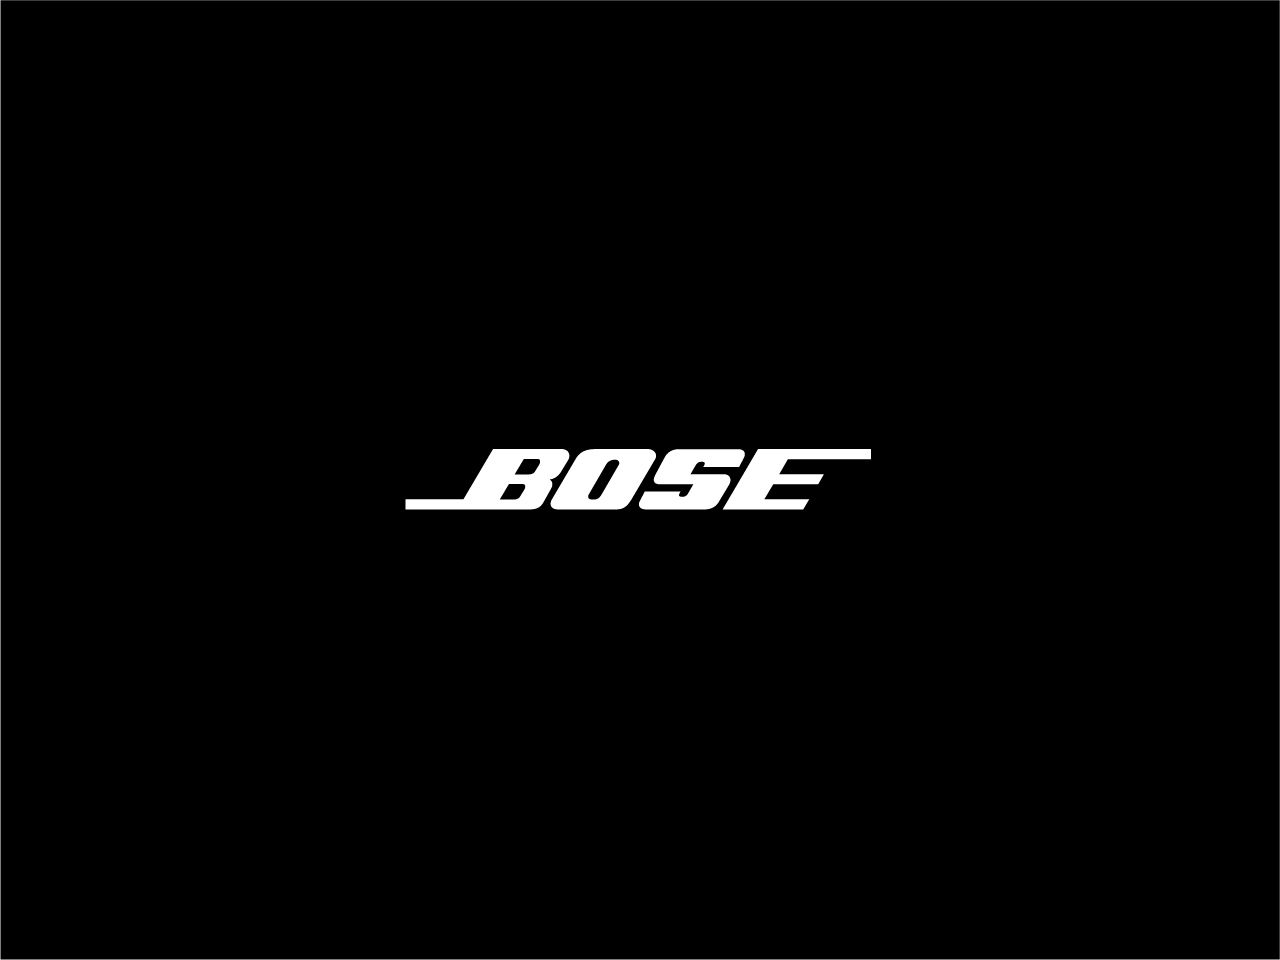 Bose Sound Flex review